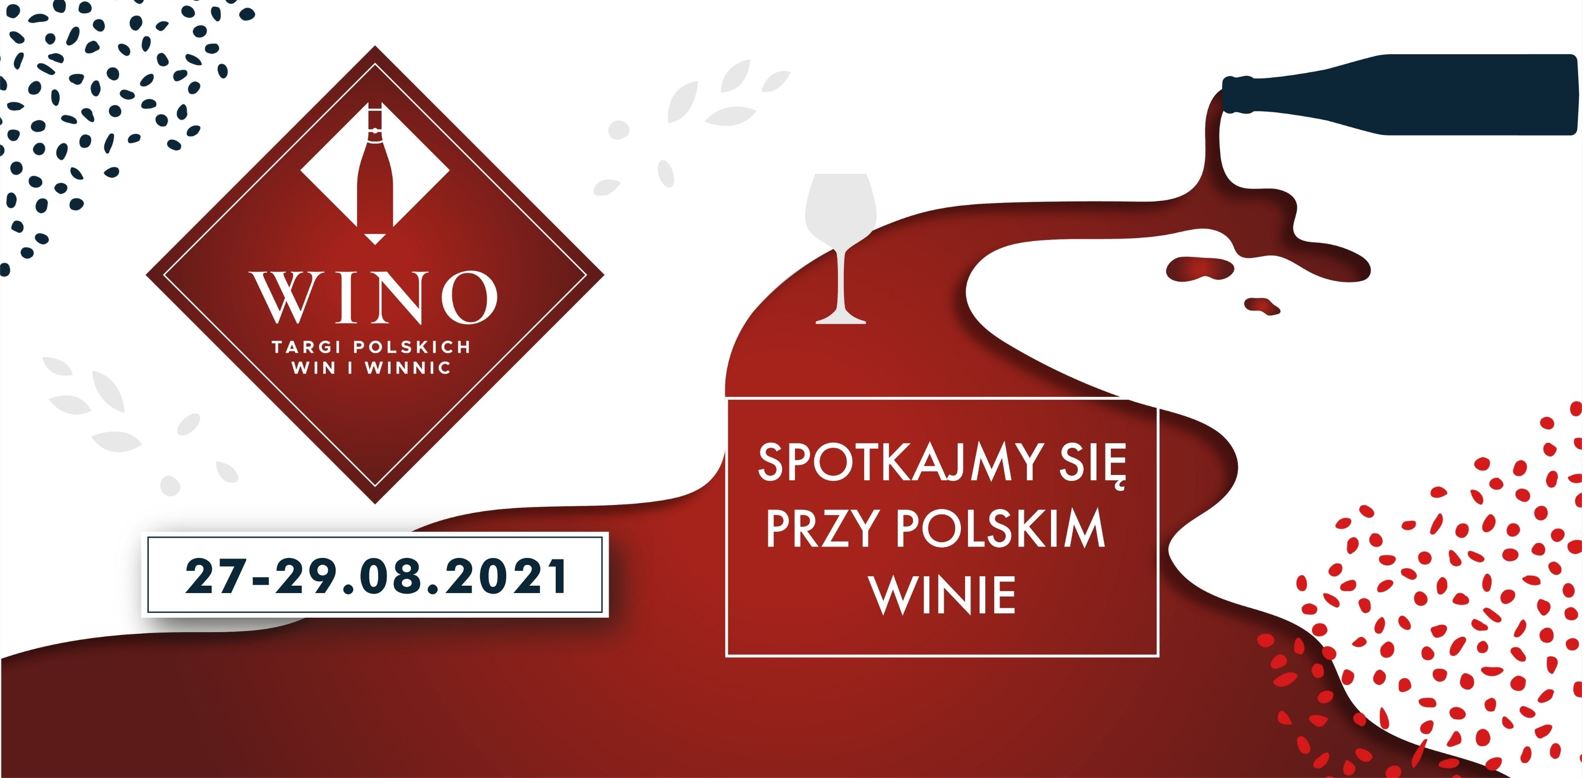 Niezwykła podróż po polskich winnicach – zapowiedź Targów WINO